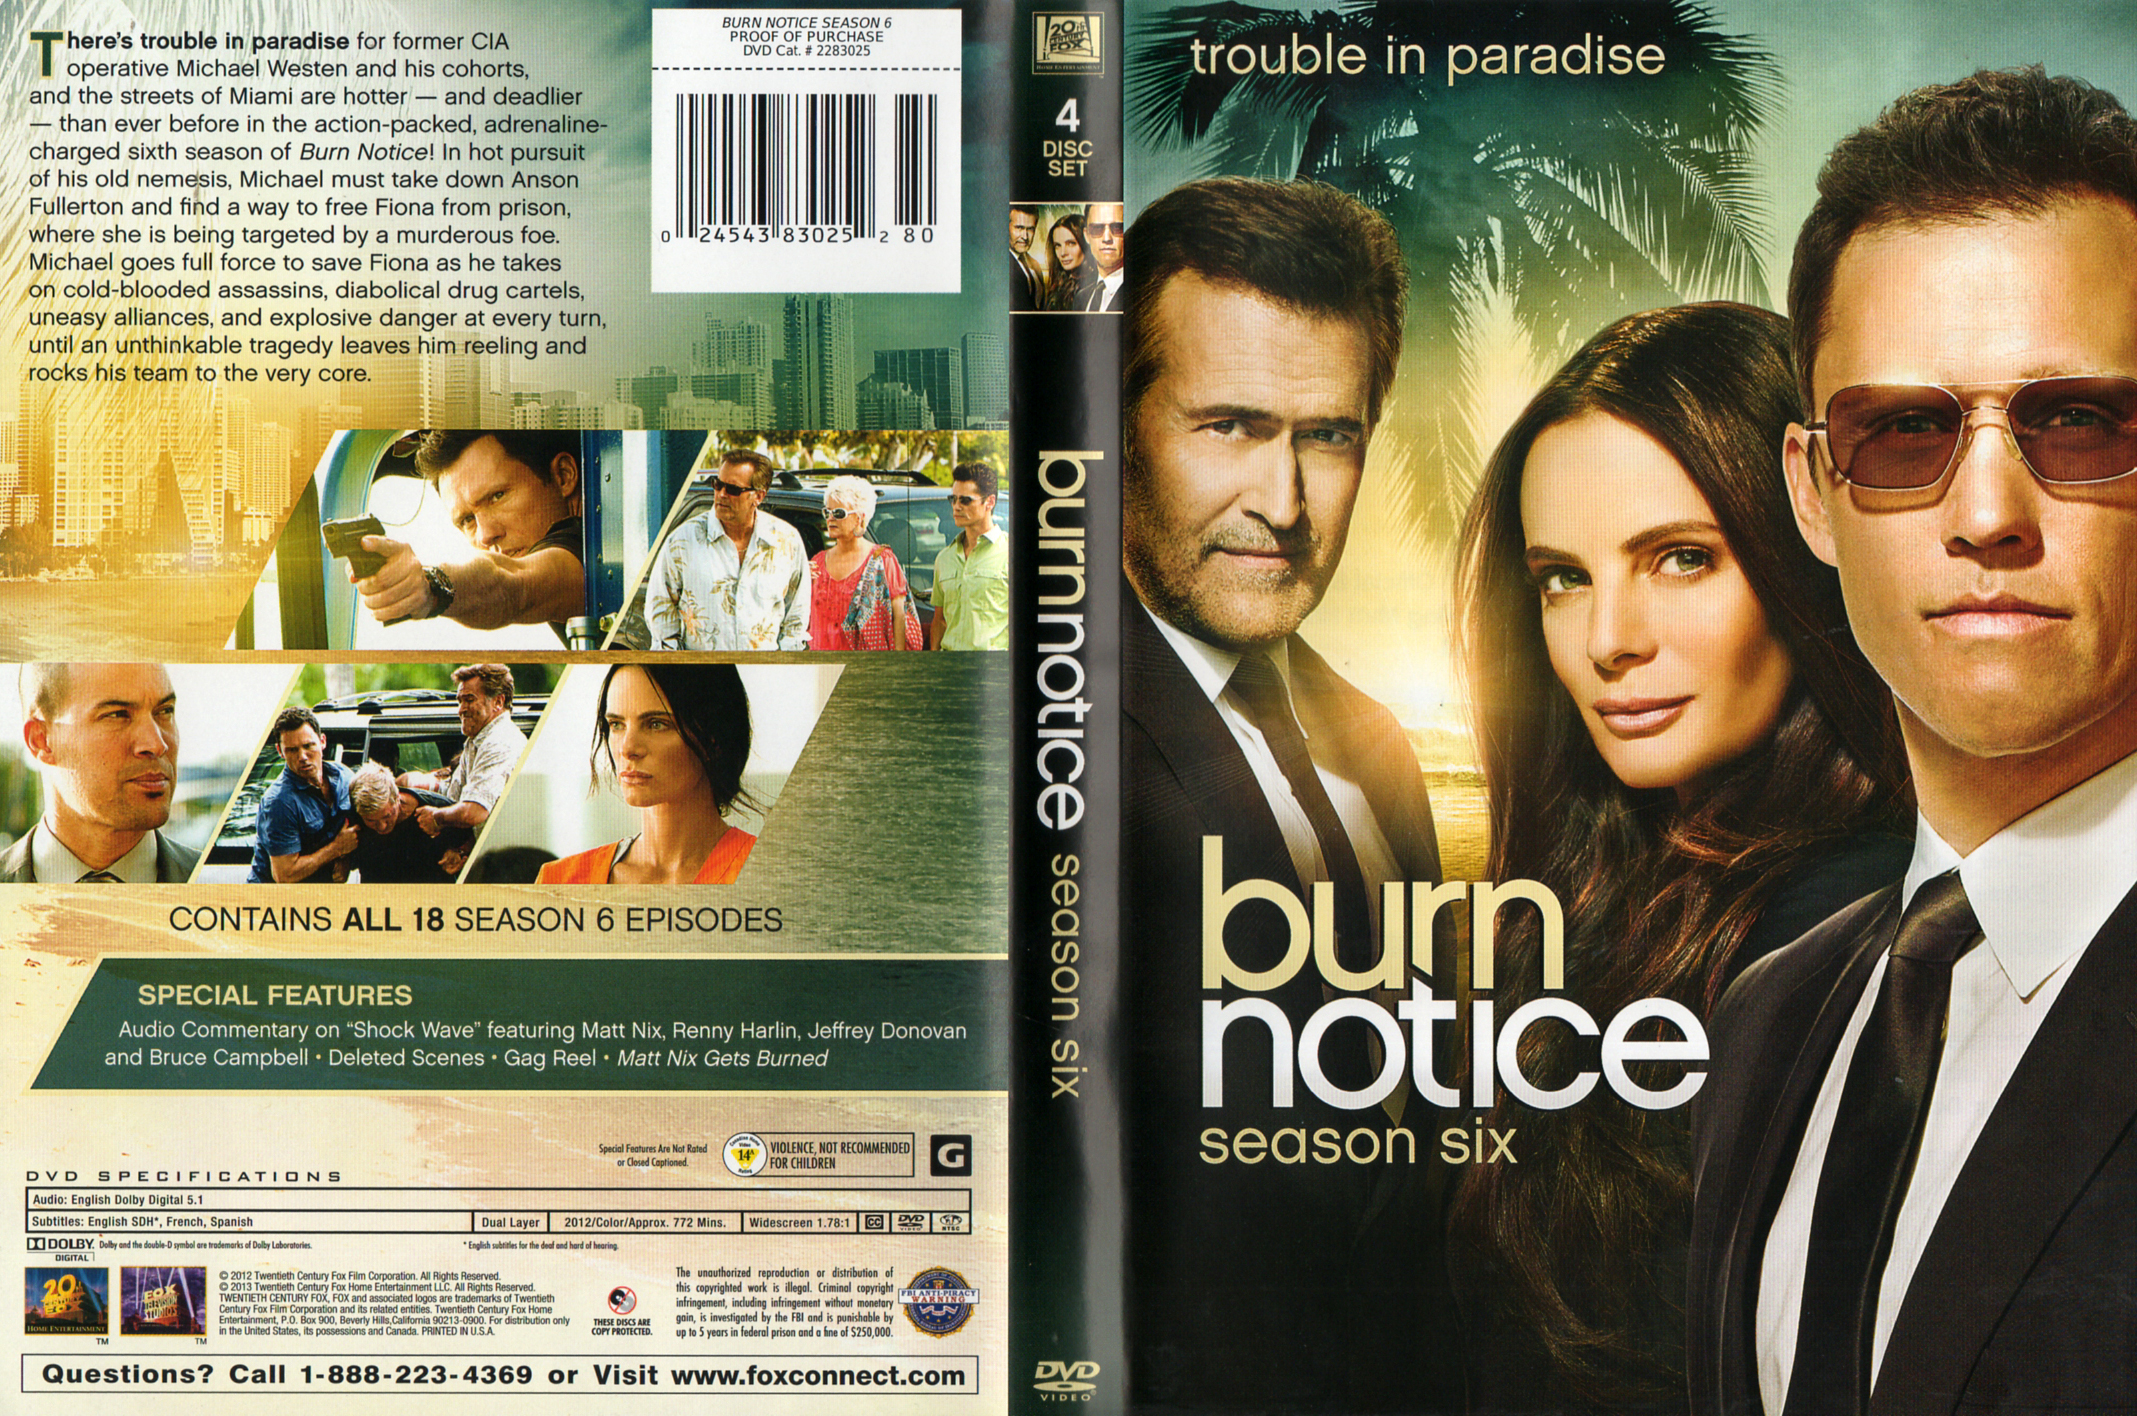 Jaquette DVD Burn notice saison 6 COFFRET Zone 1